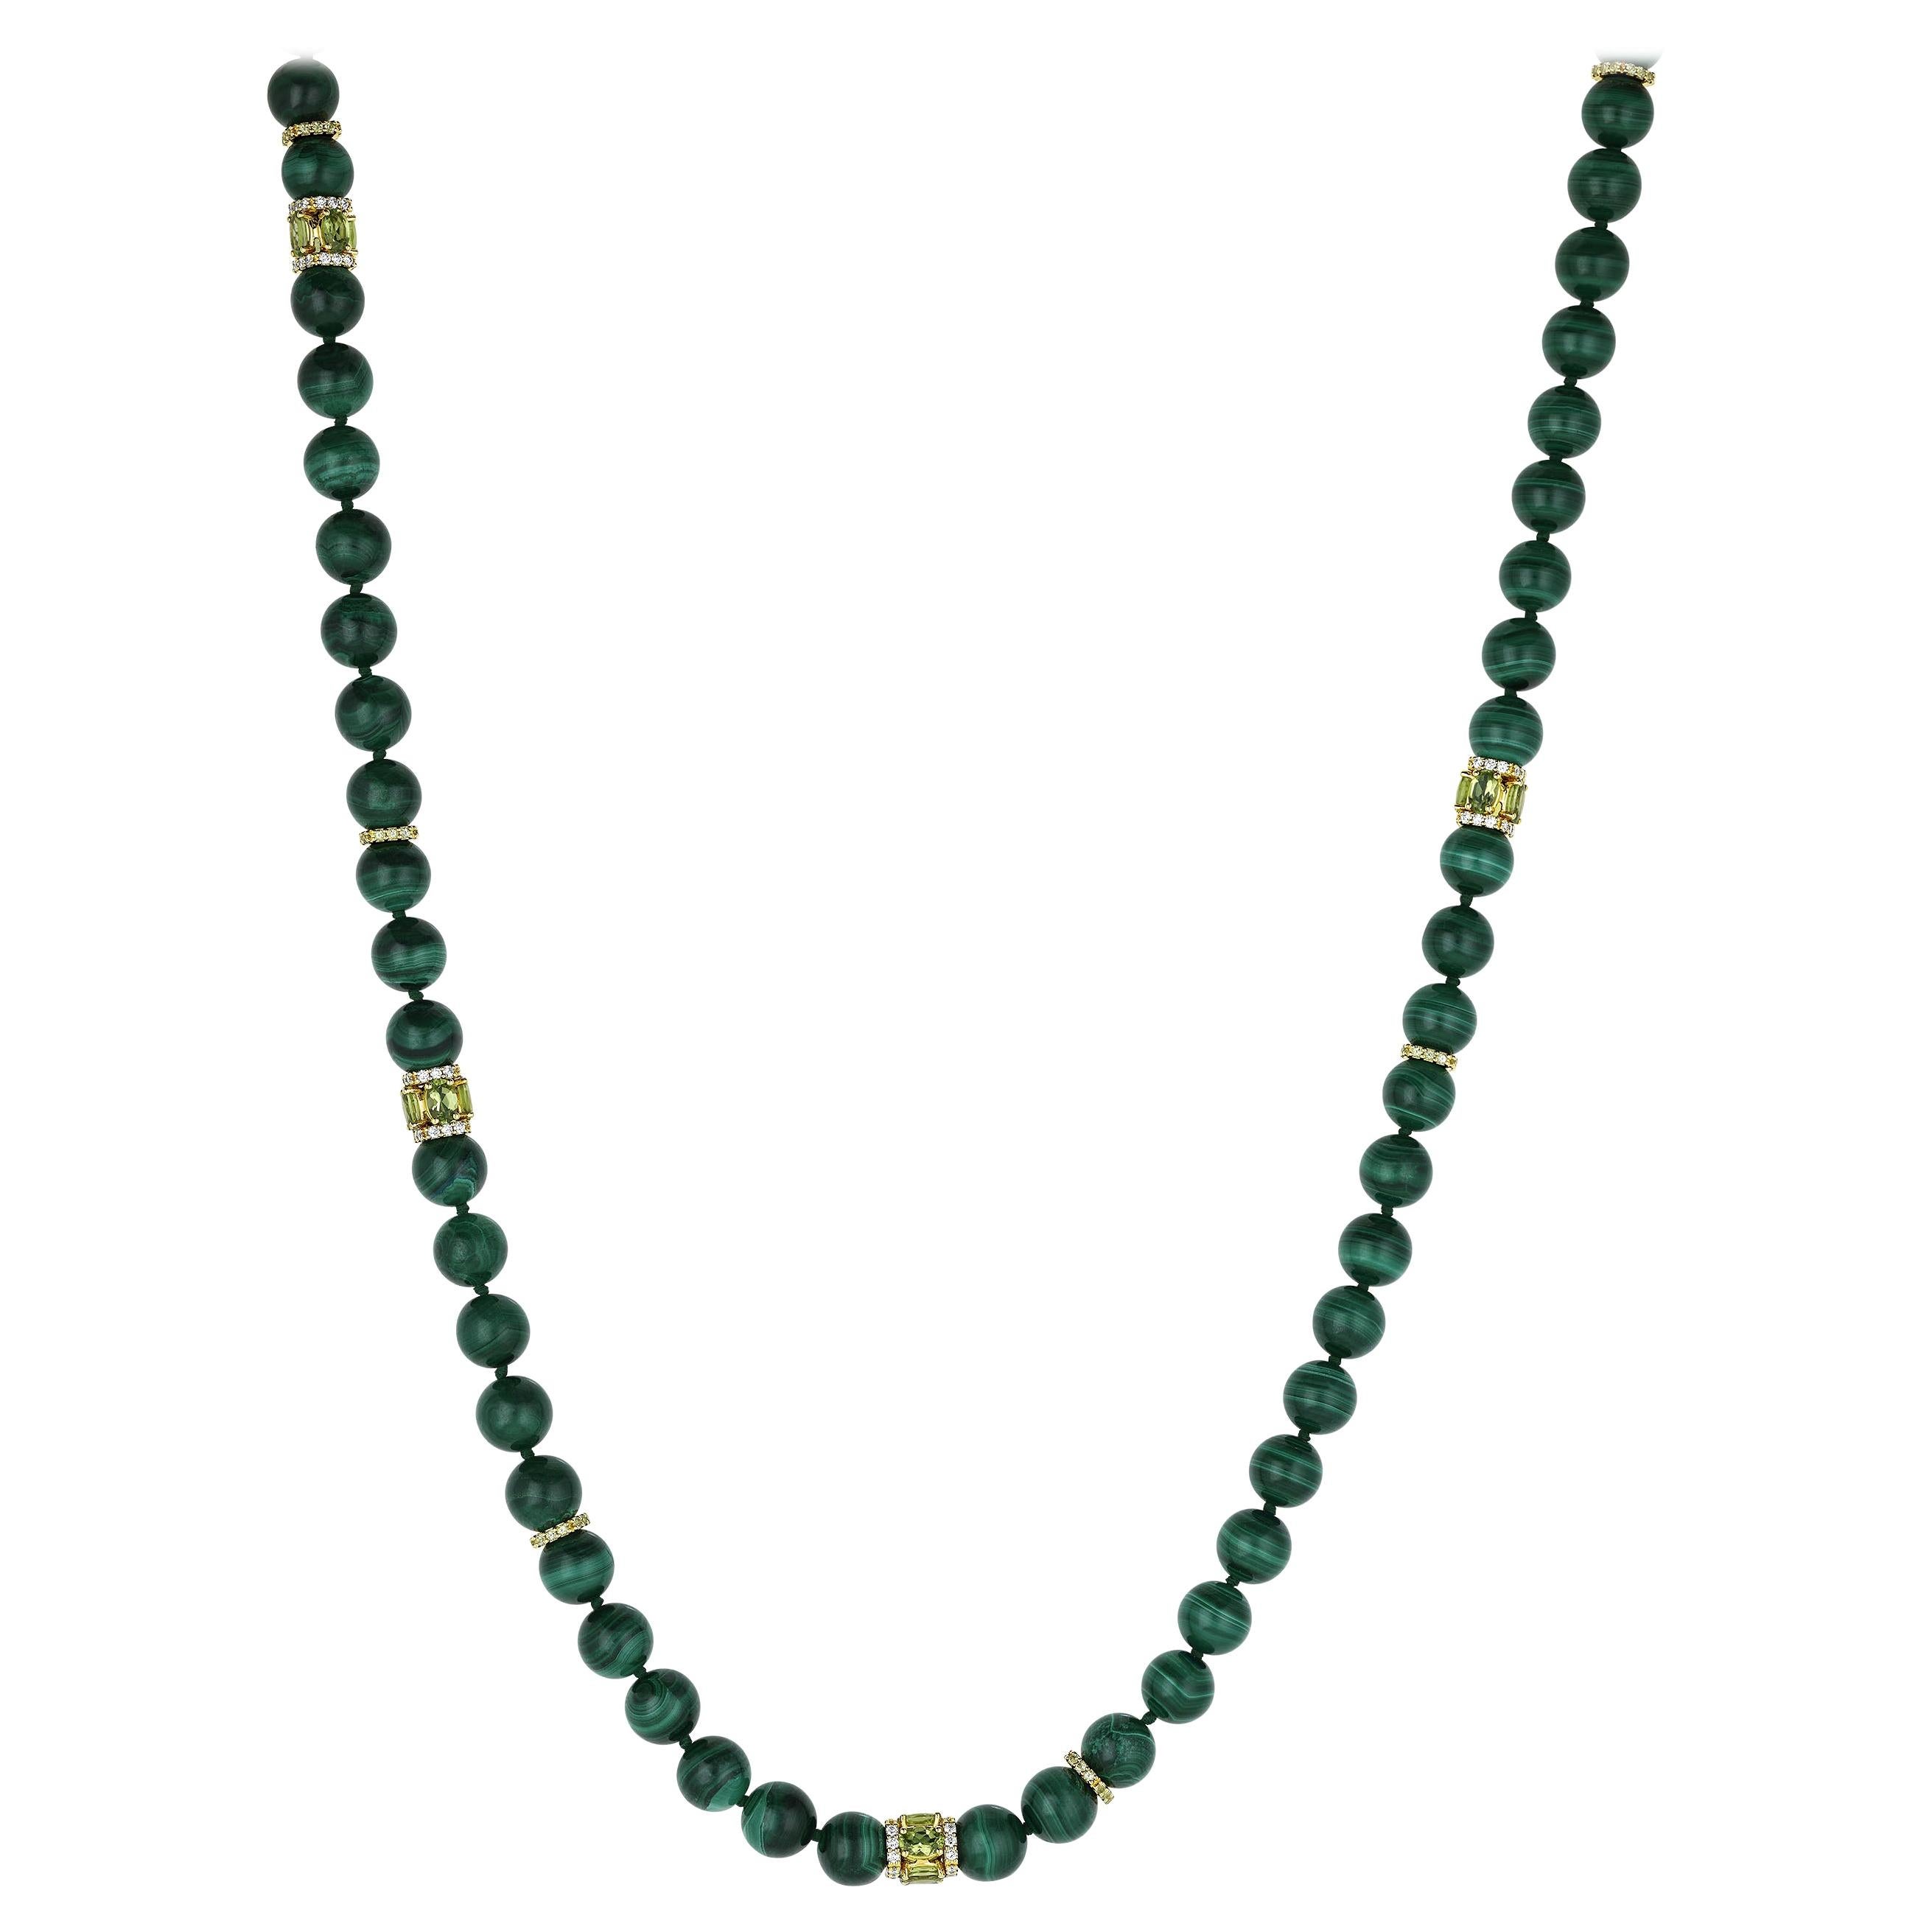 Necklace with Malachite Beads, 18k Yellow Gold, White Diamonds, and Peridot